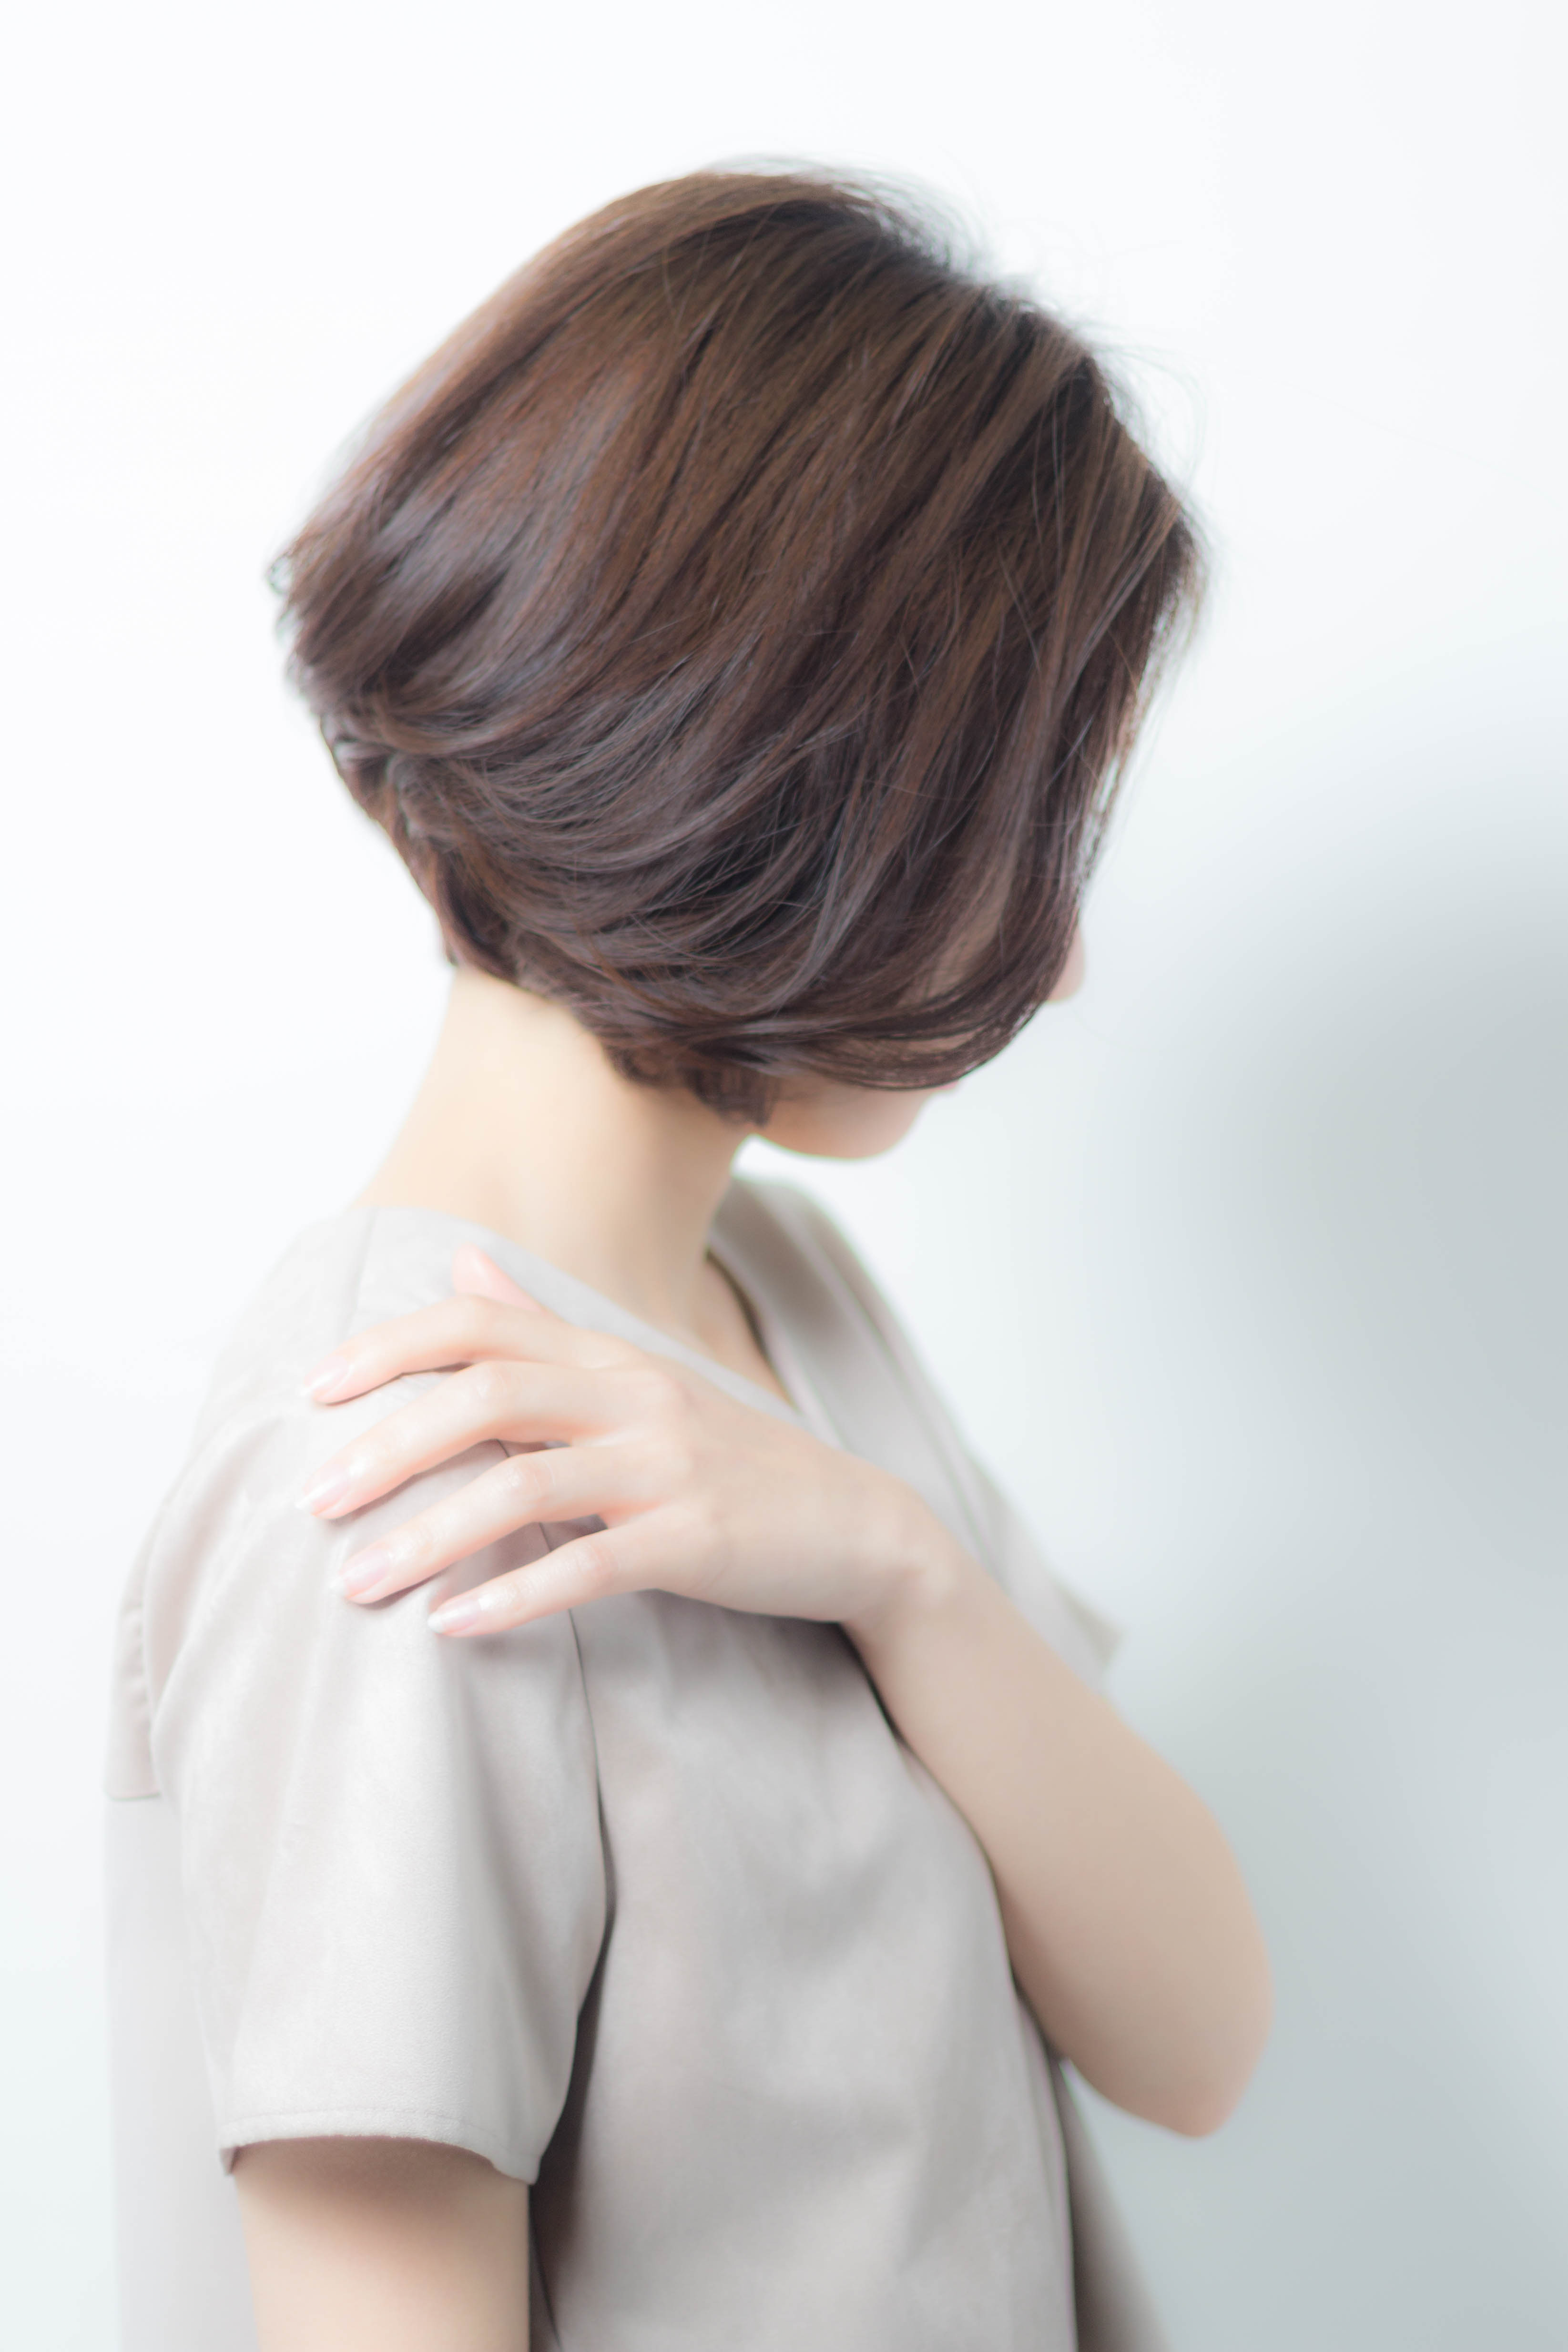 21年夏 40代の髪型のお悩みを 素敵に生かすボブのヘアカタログ 似合わせカットが上手い東京の美容師 美容室minx銀座 蛭田のブログ